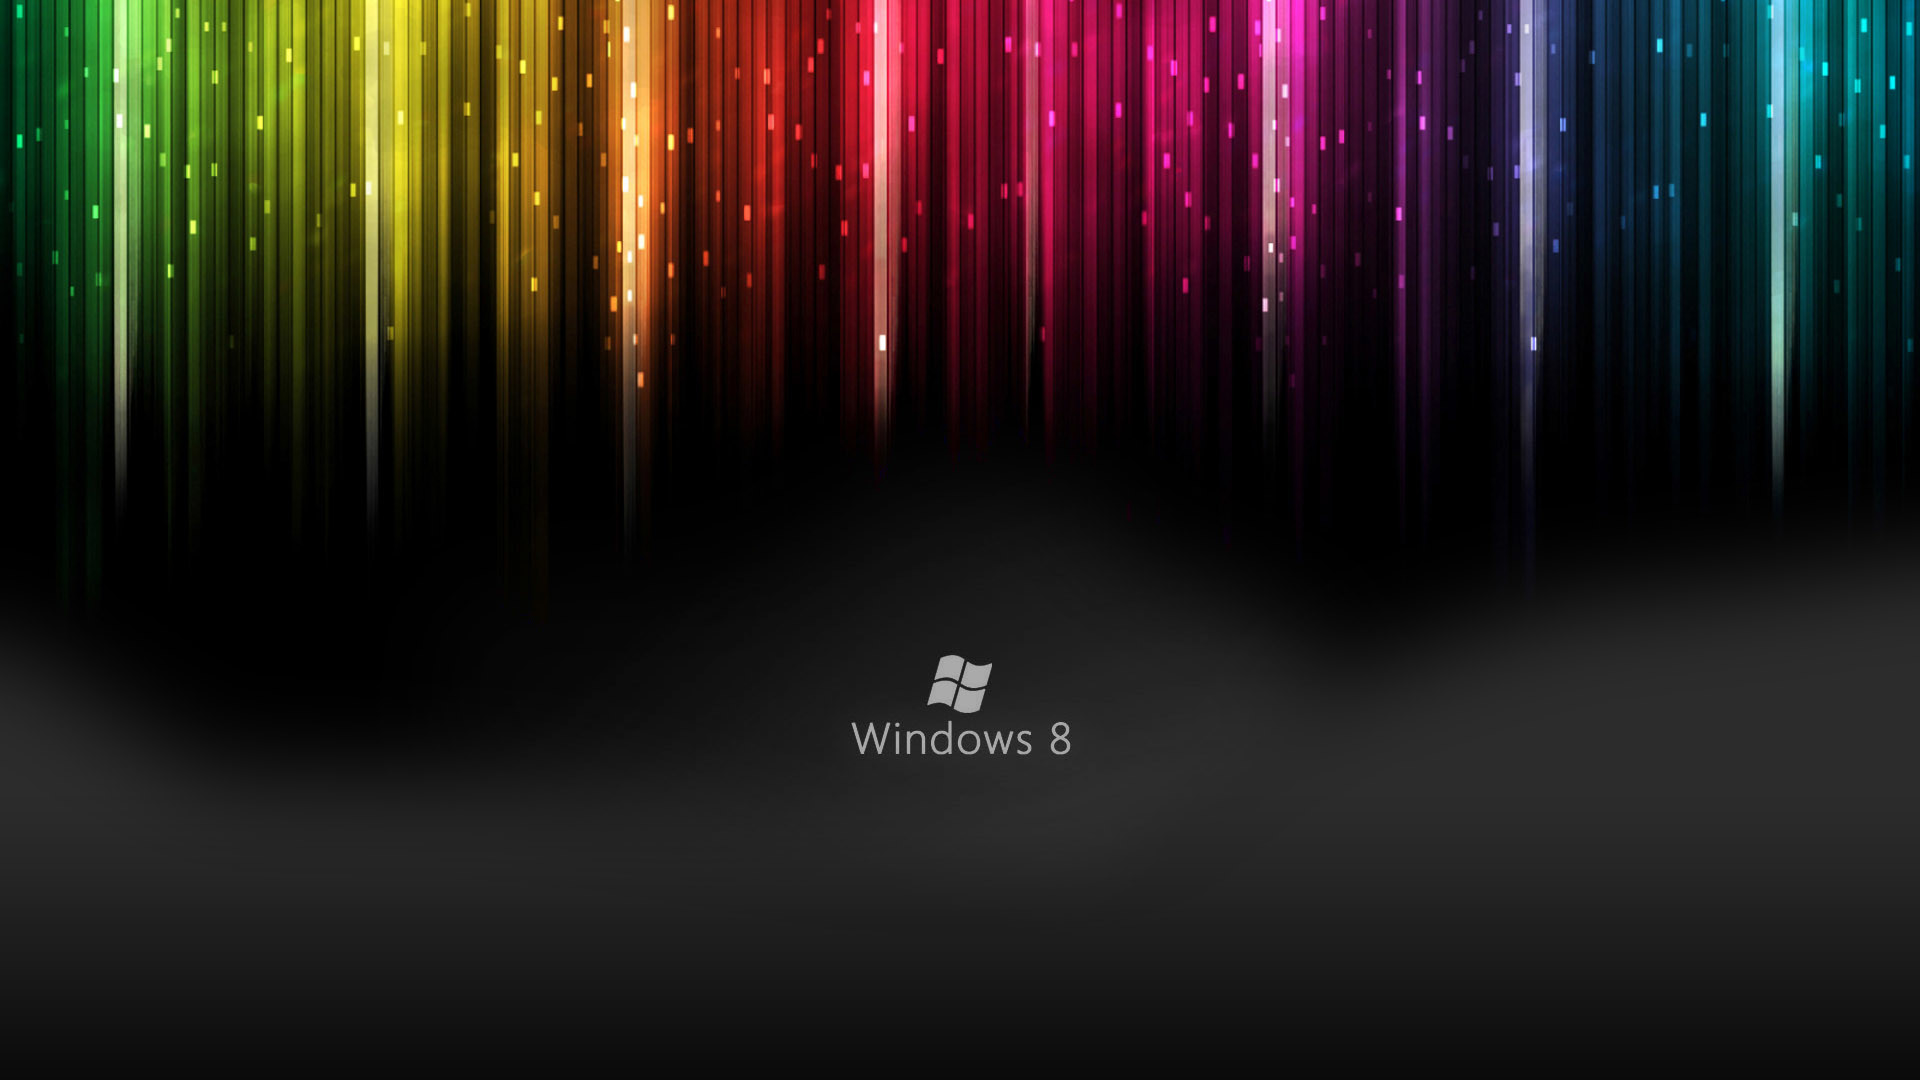 Windows 8 Live Wallpapers HD Wallpaper of Windows – hdwallpaper2013 .